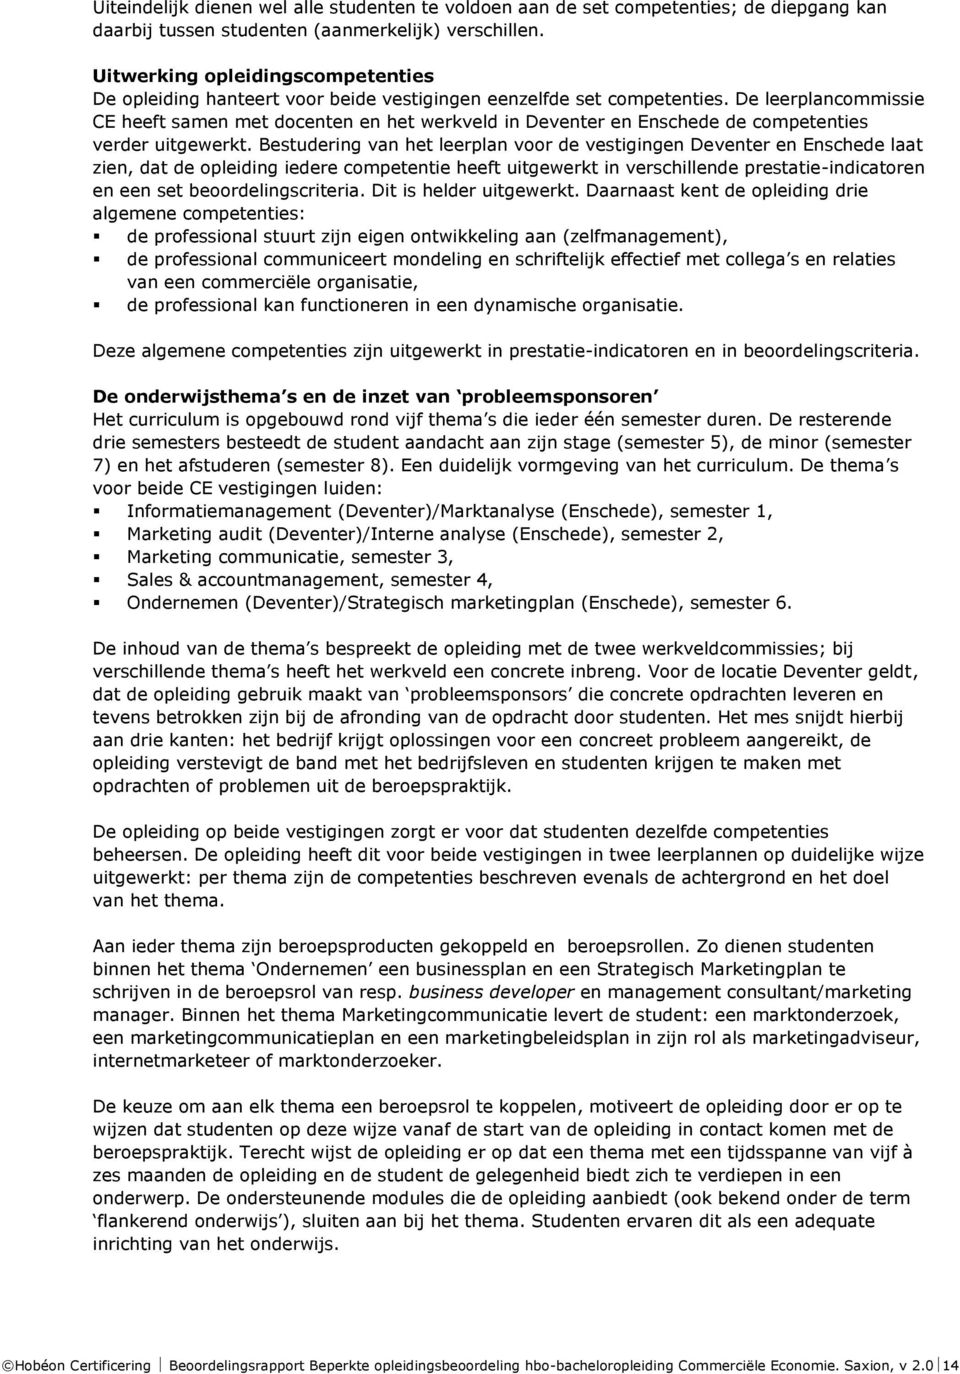 De leerplancommissie CE heeft samen met docenten en het werkveld in Deventer en Enschede de competenties verder uitgewerkt.